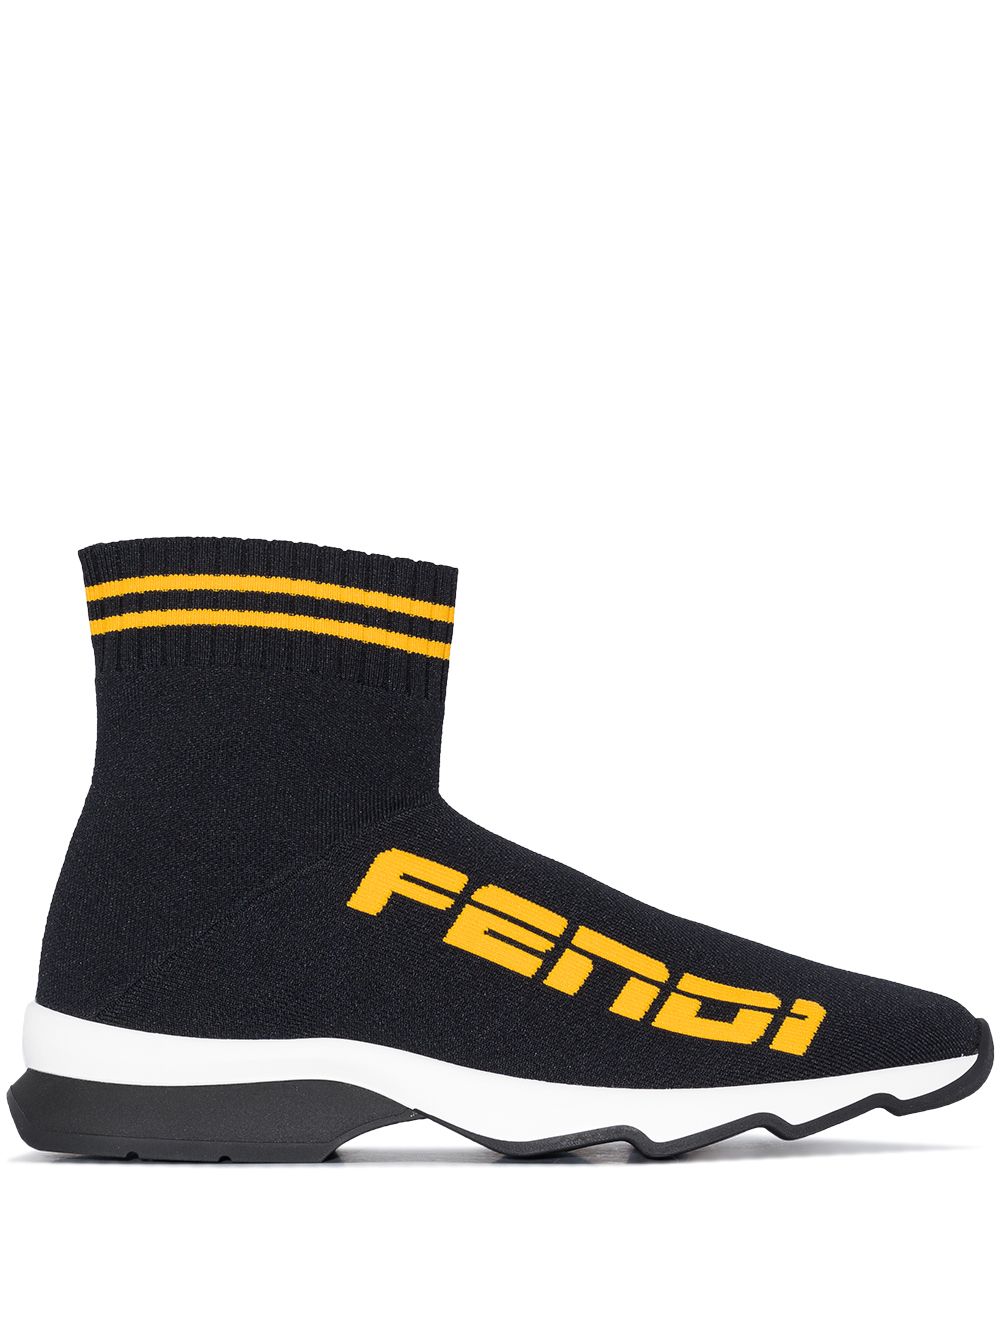 Rockoko Sock Sneakers дамски обувки Fendi 841888244_36